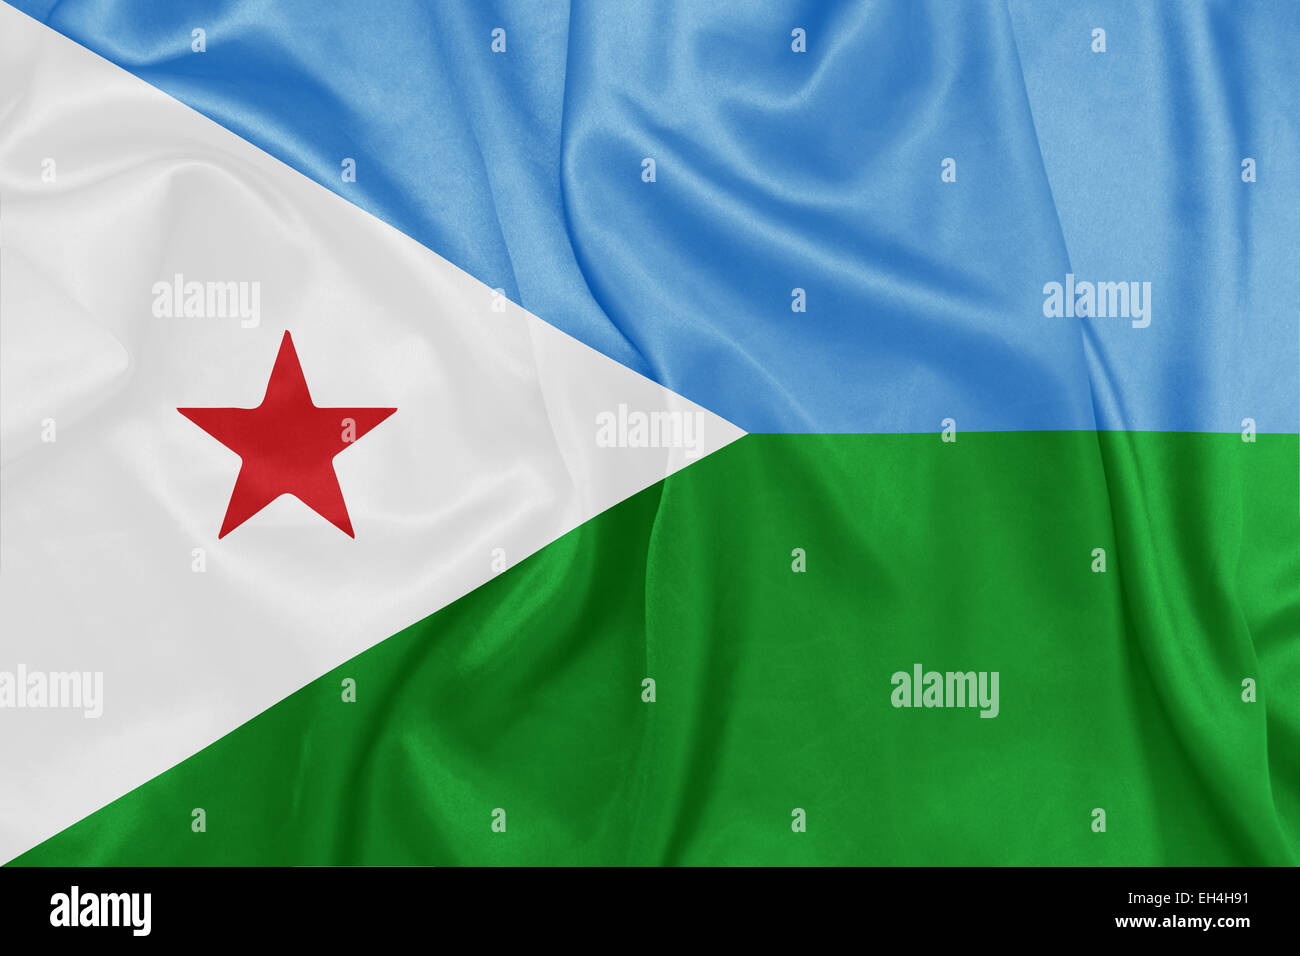 Djibouti - brandissant un drapeau national sur la texture de la soie Banque D'Images